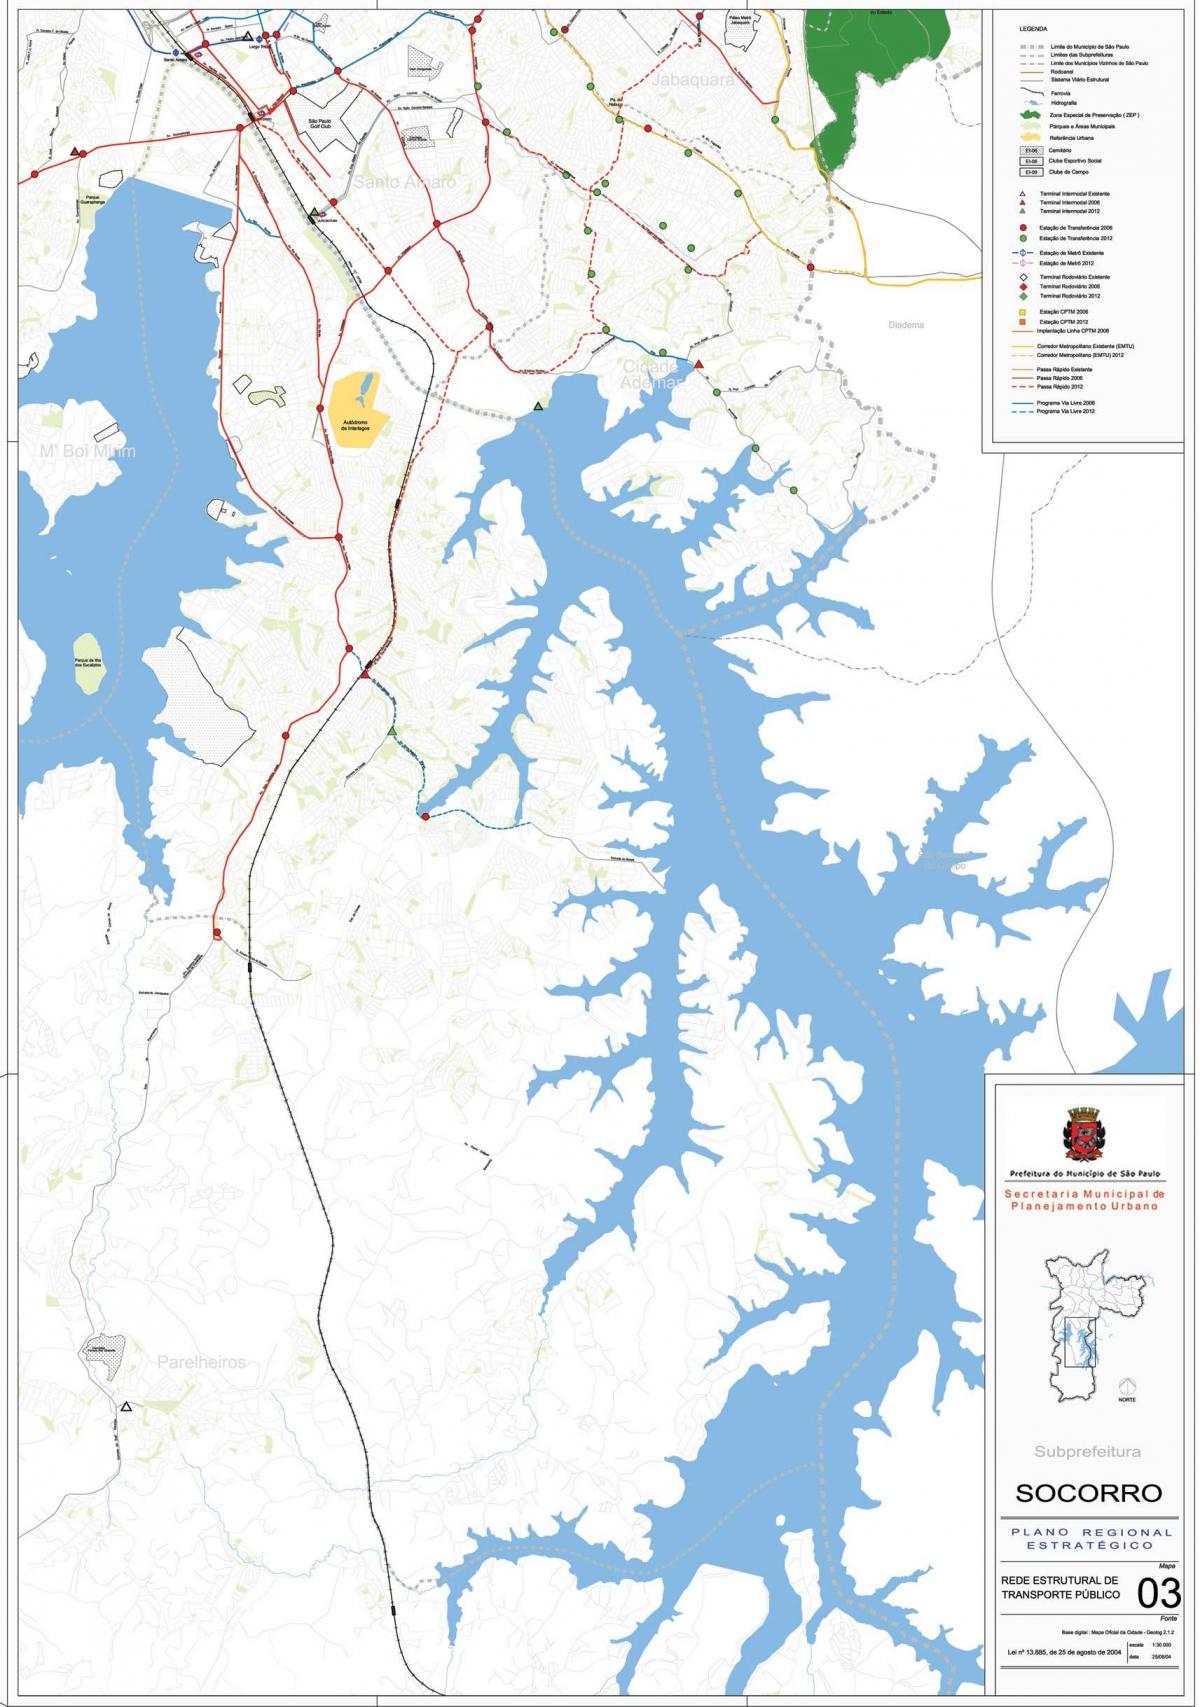 Peta dari Capela do Socorro Sao Paulo - angkutan Umum